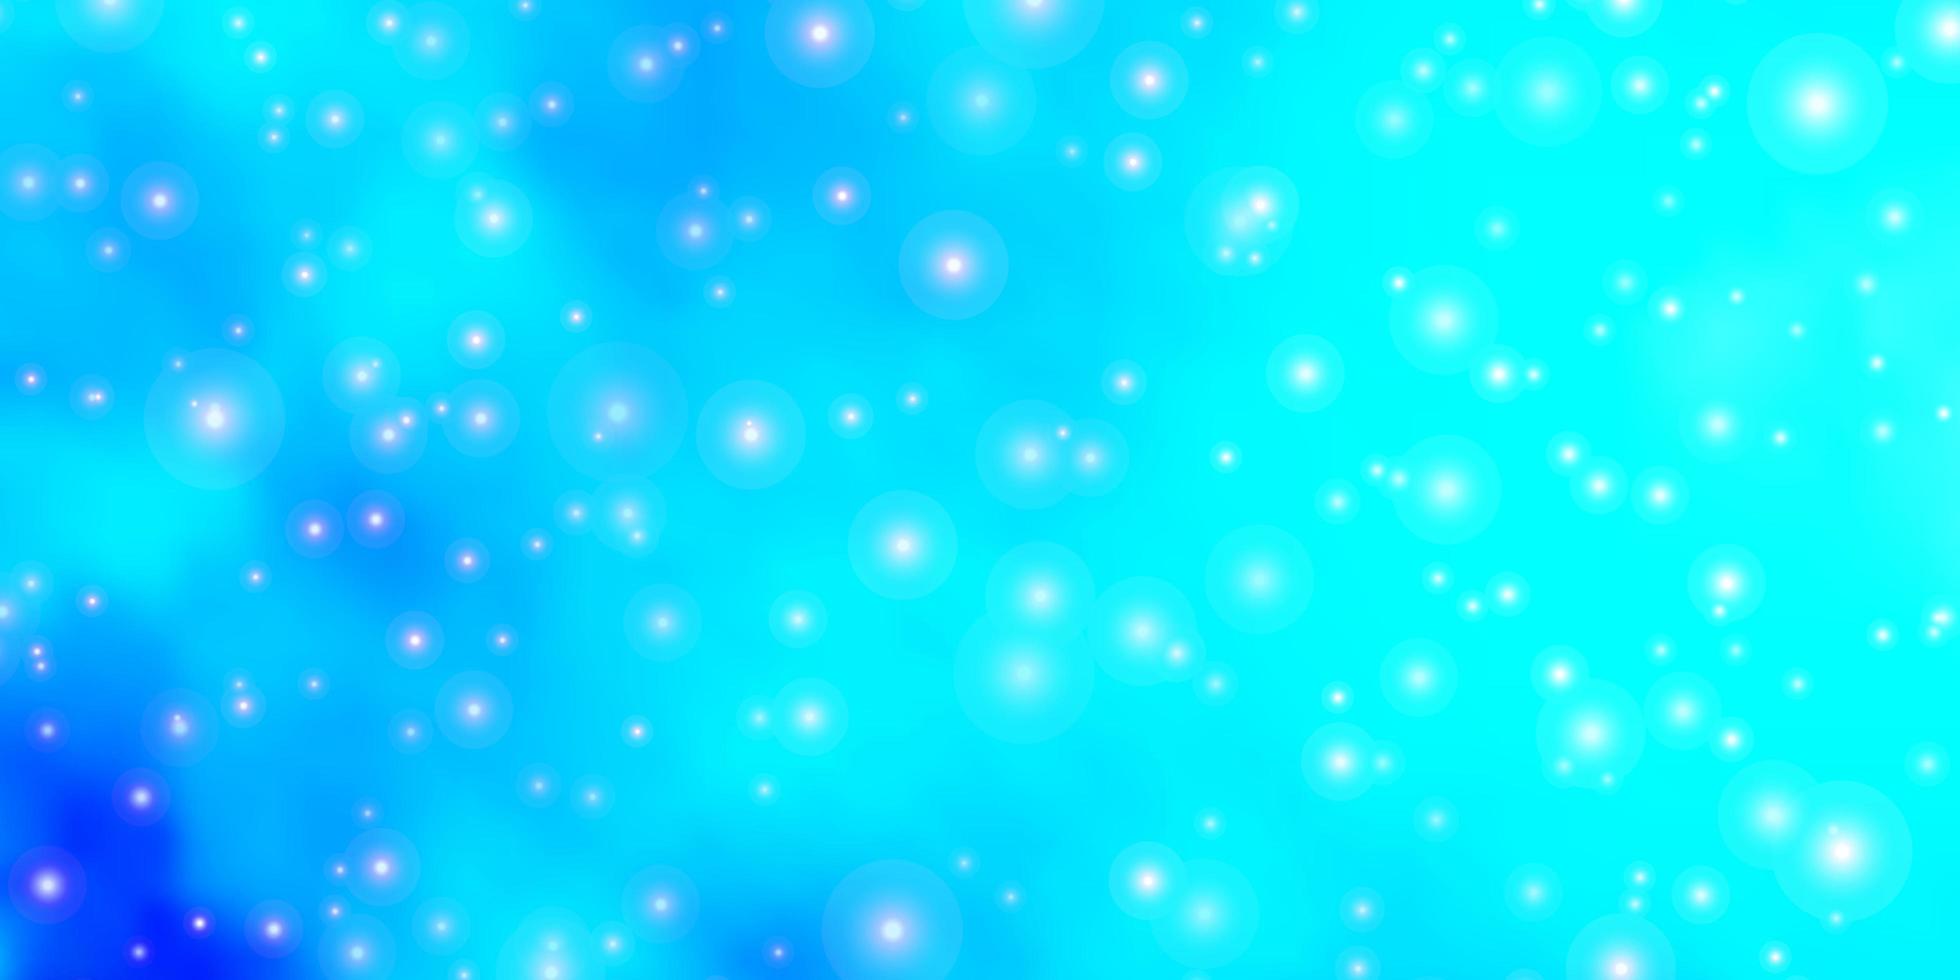 ljusblå vektormall med neonstjärnor dekorativ illustration med stjärnor på abstrakt malltema för mobiltelefoner vektor